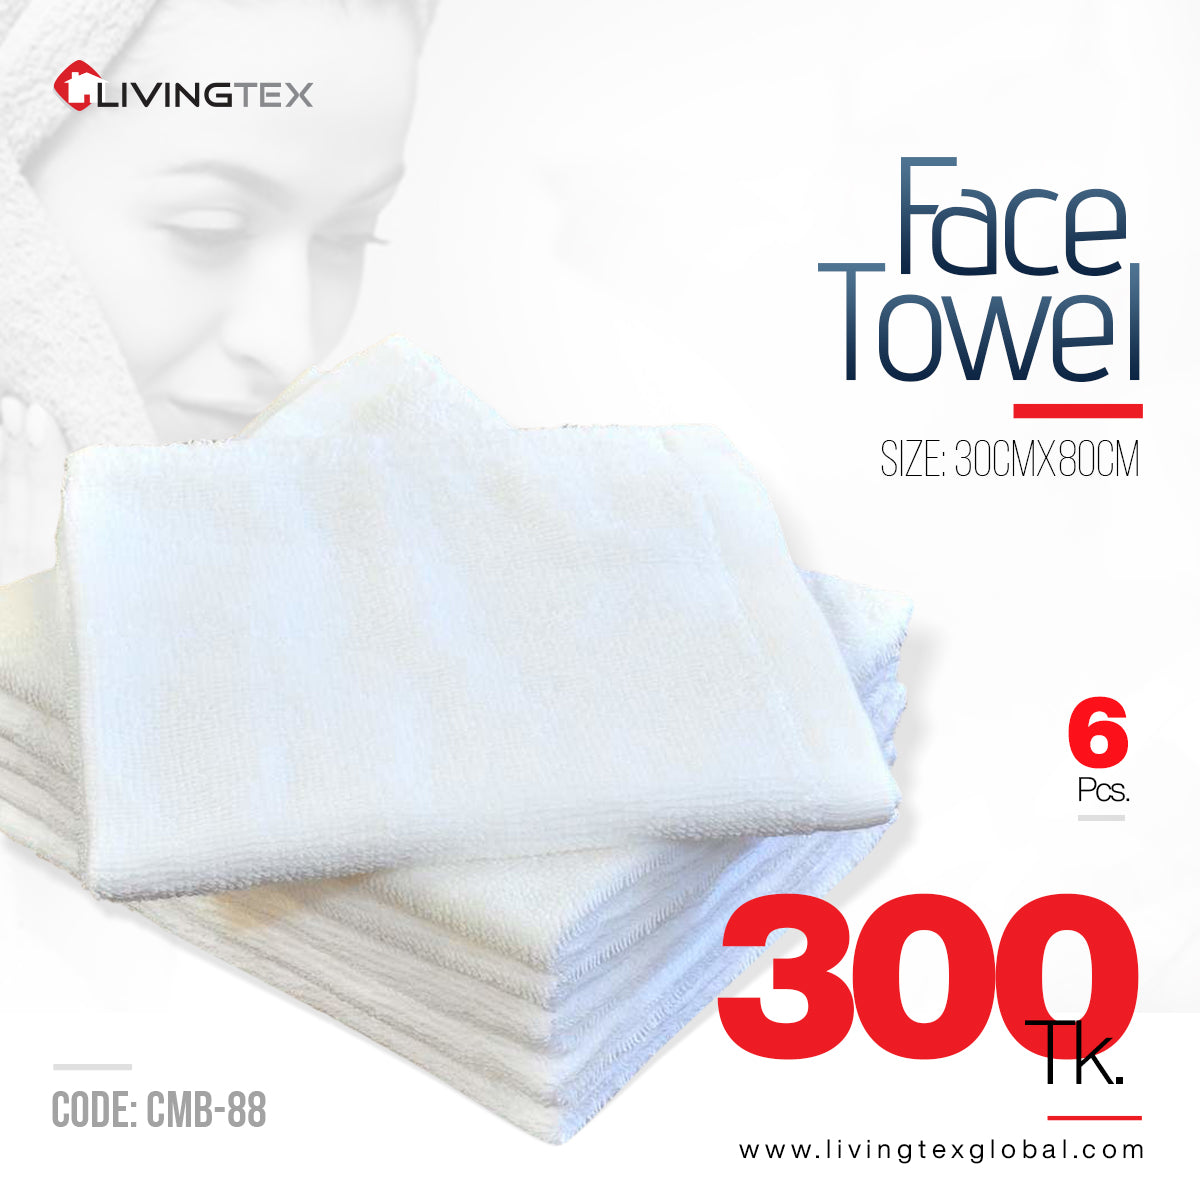 6 PC's Face Towel